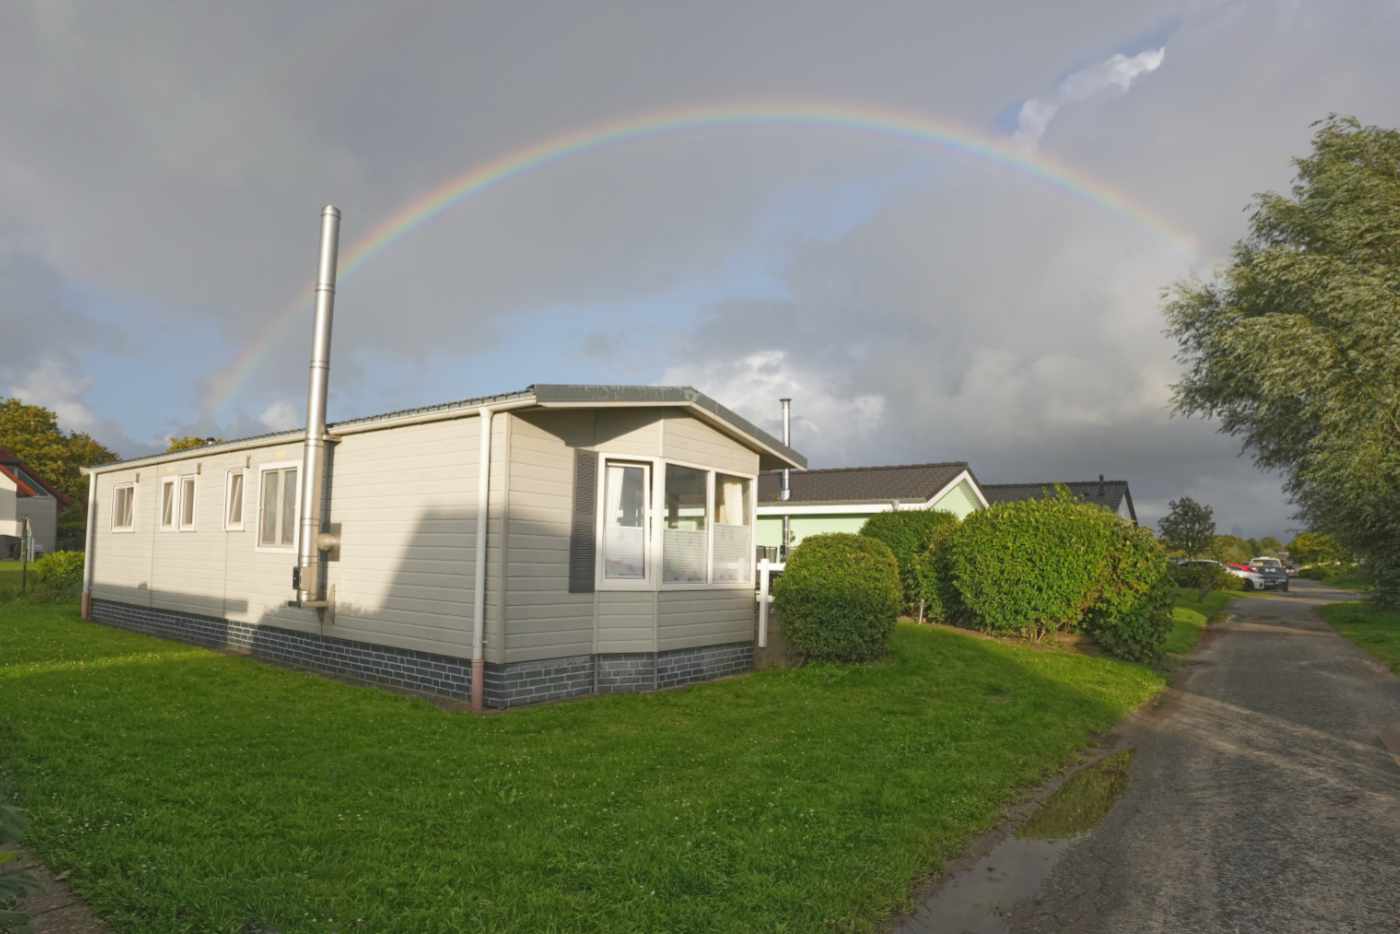 Außenansicht Ferienhaus zum Seepferdchen in Dorum Neufeld mit Regenbogen